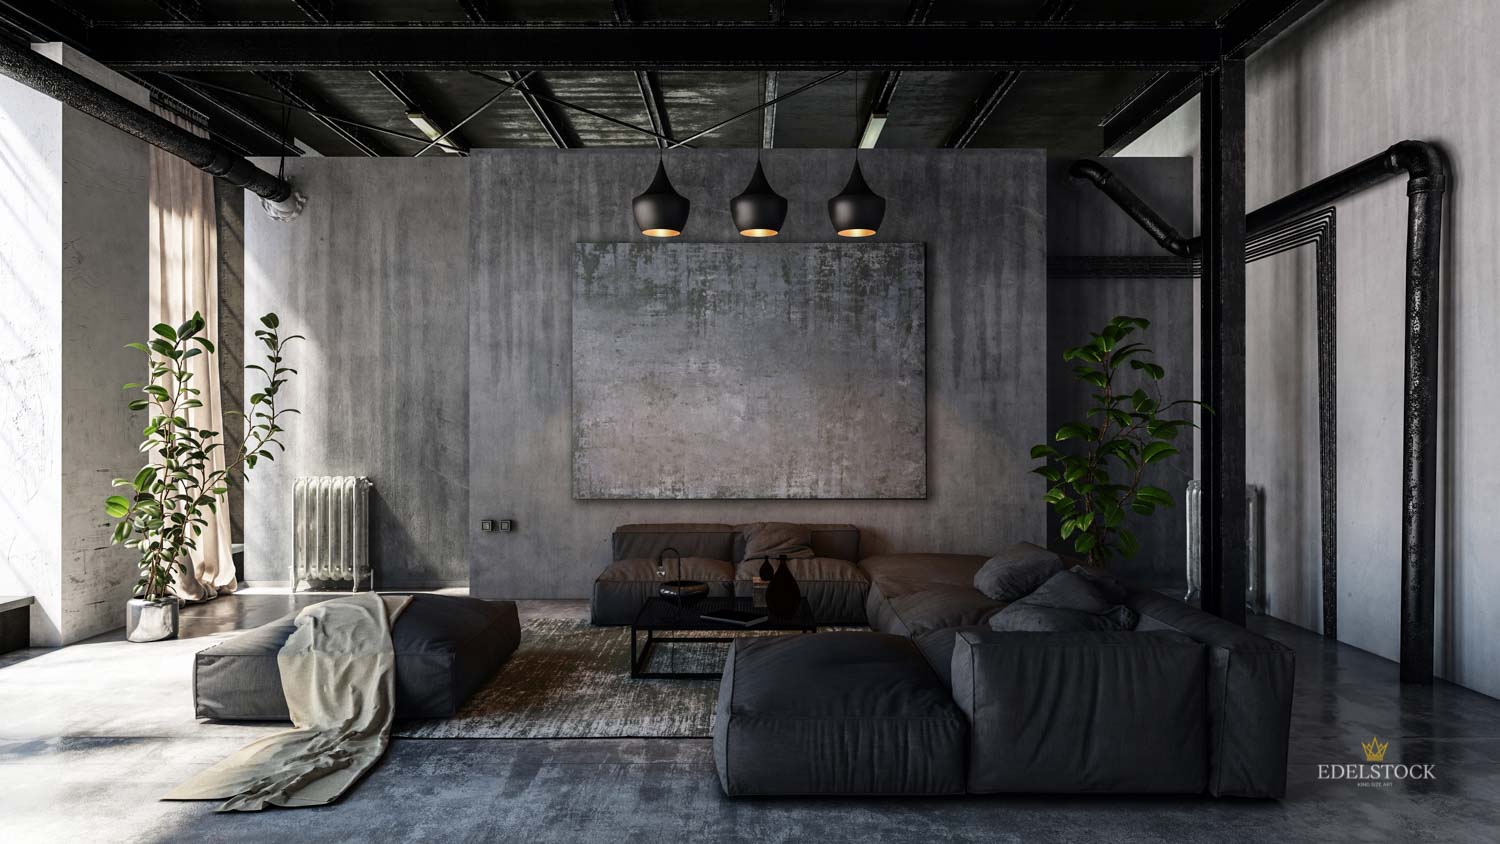 EDELSTOCK XXL Wandbild in dunkelgrau hängt in sehr stilvollem, fast nur in Grau gehaltenen Wohnzimmer